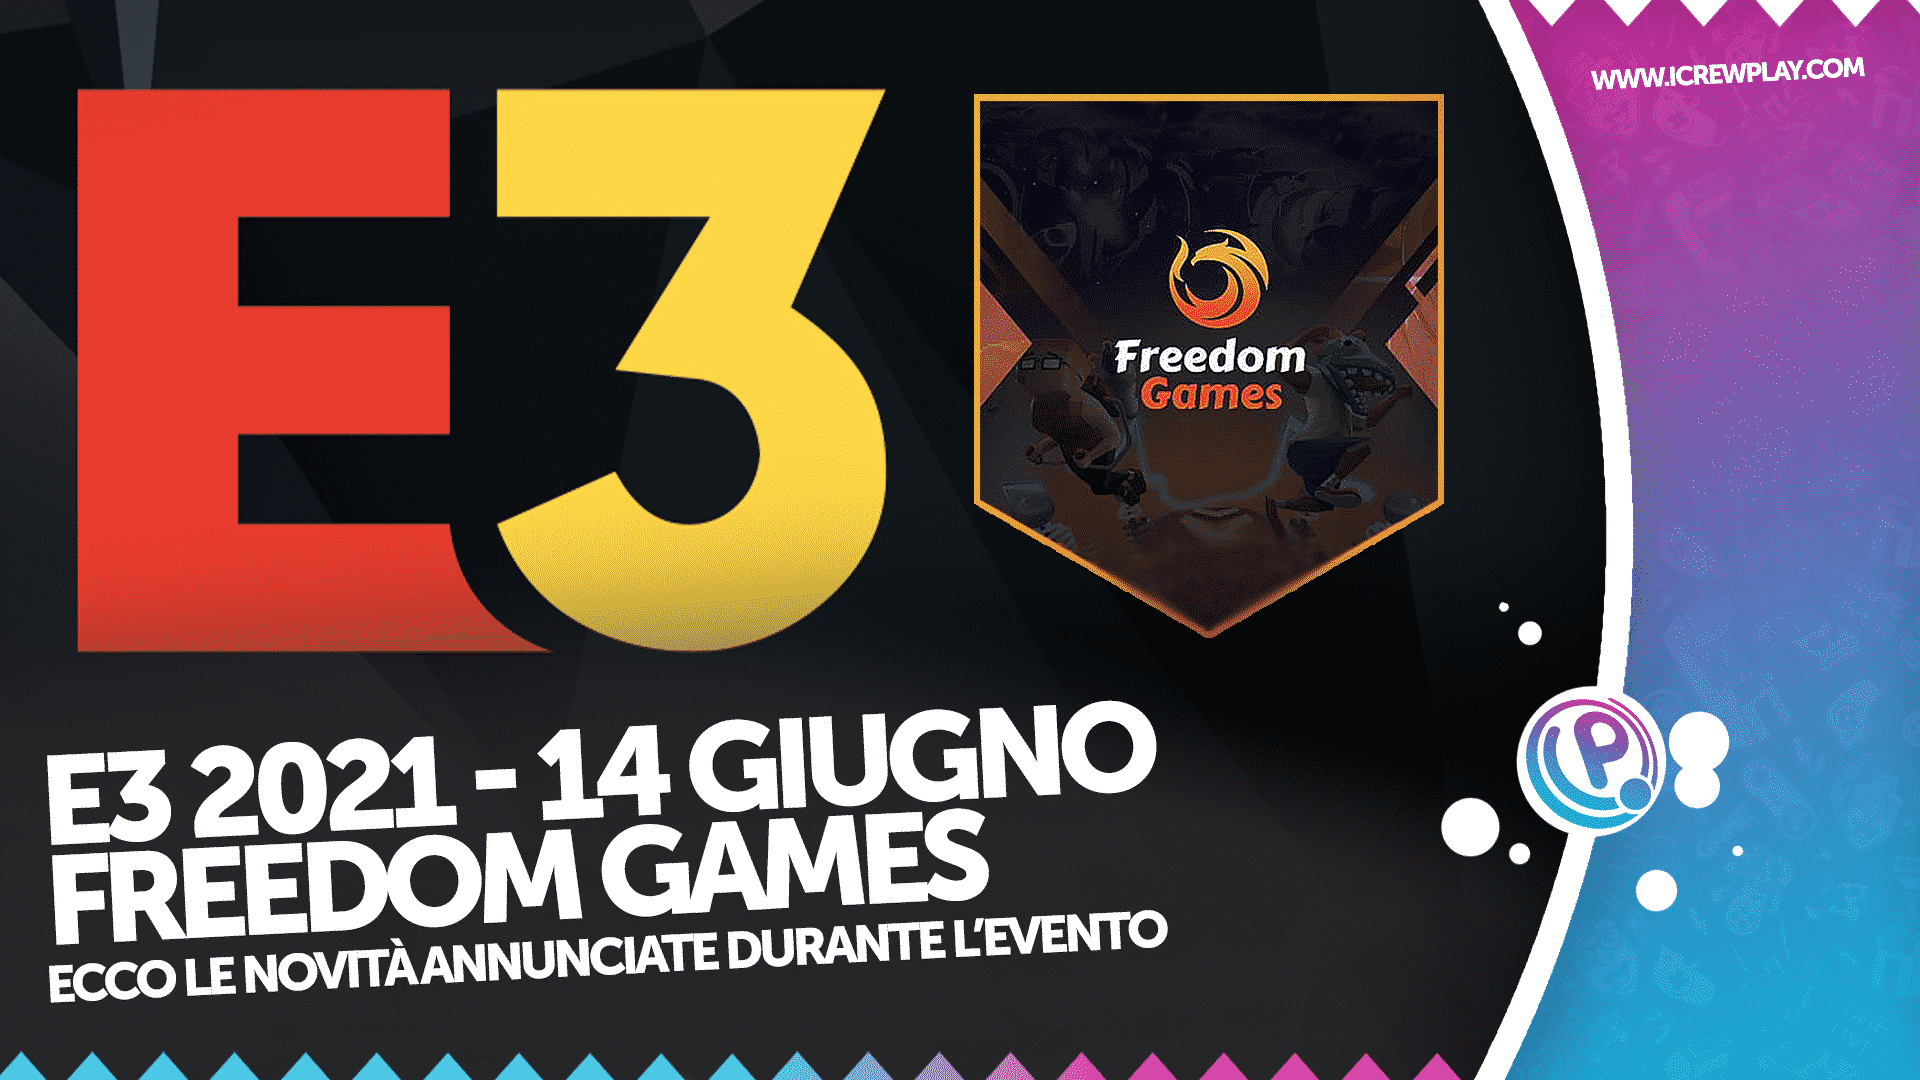 E3 2021, Freedom Games, E3 2021 Freedom Games, Freedom Games Annunci, Giochi Freedom Games